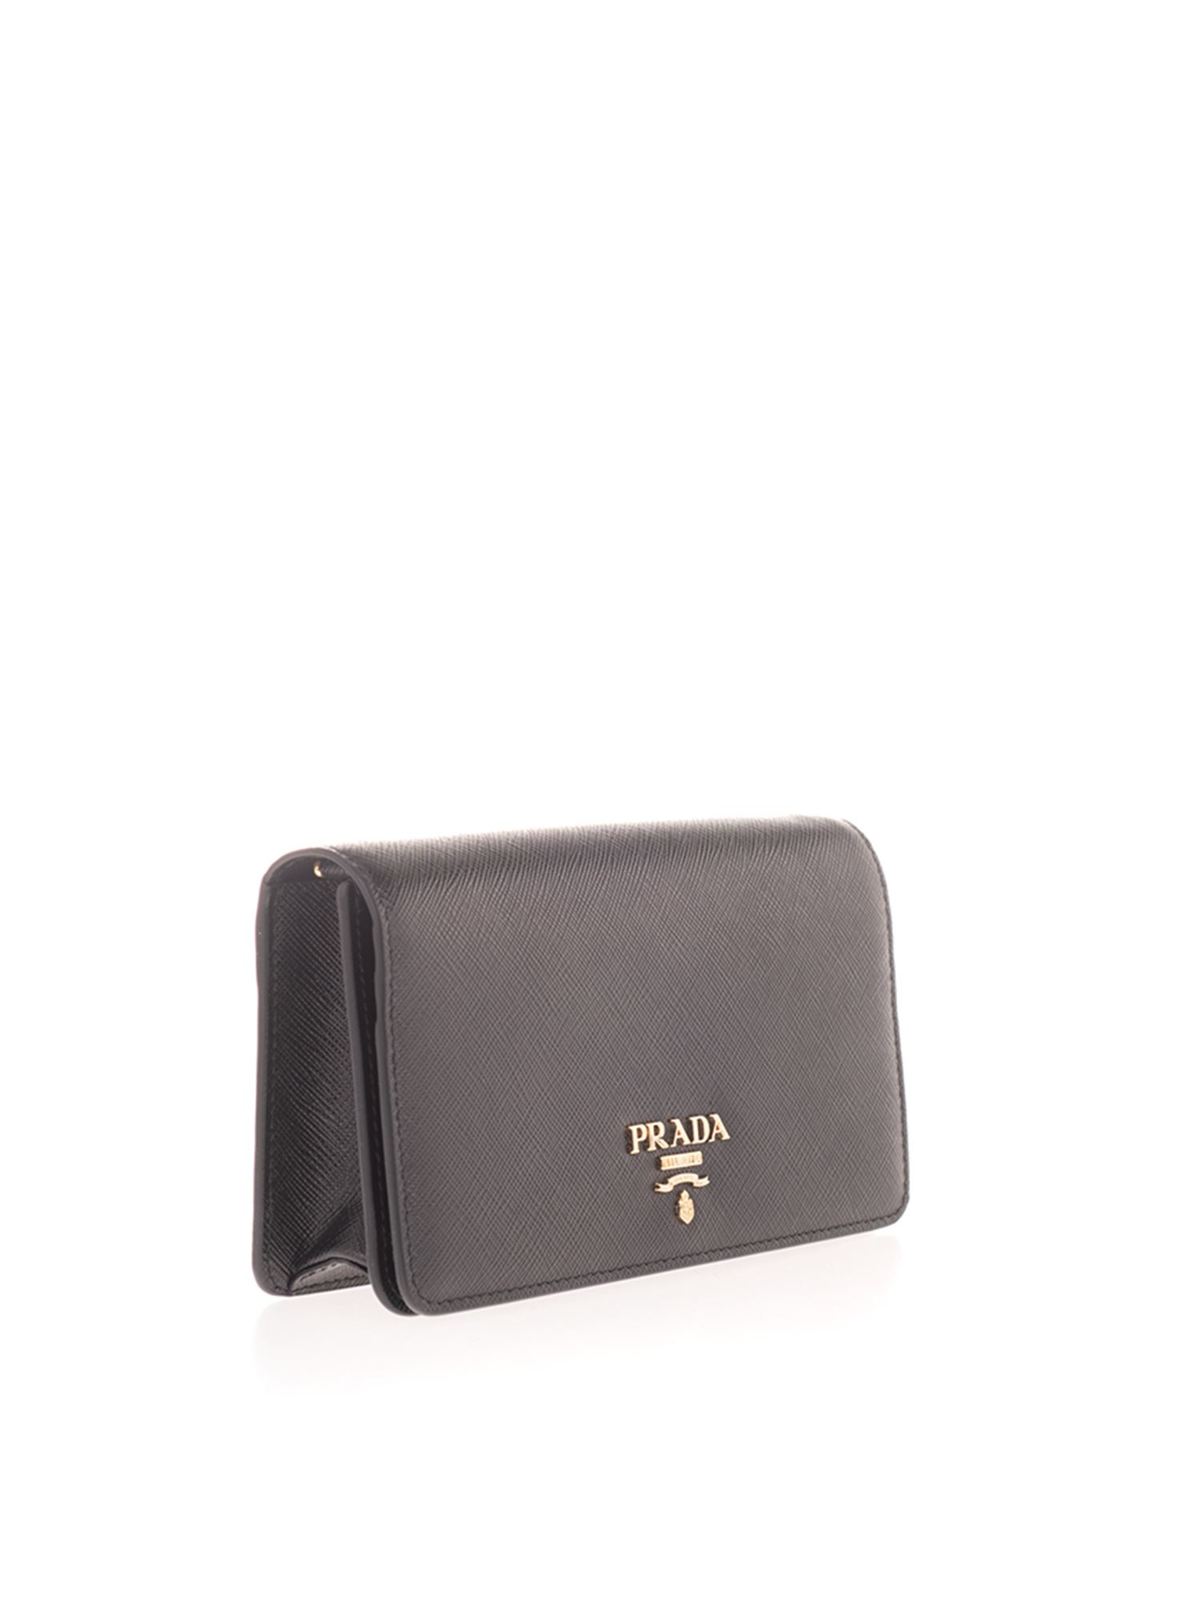 Prada - Logo Saffiano wallet in black 